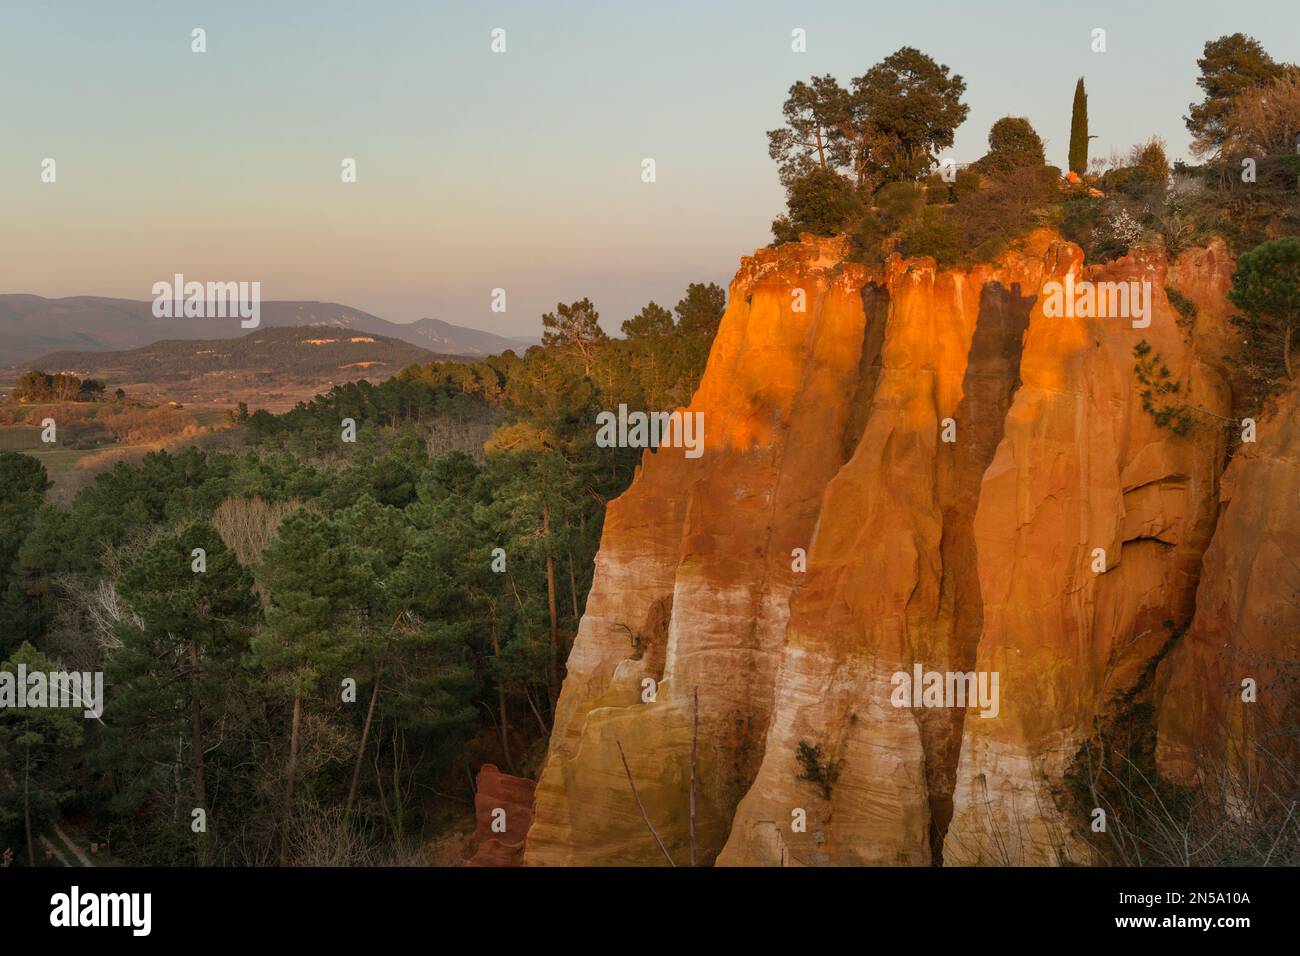 Célèbres falaises d'ocre autour du village de Roussillon en Provence, France Banque D'Images